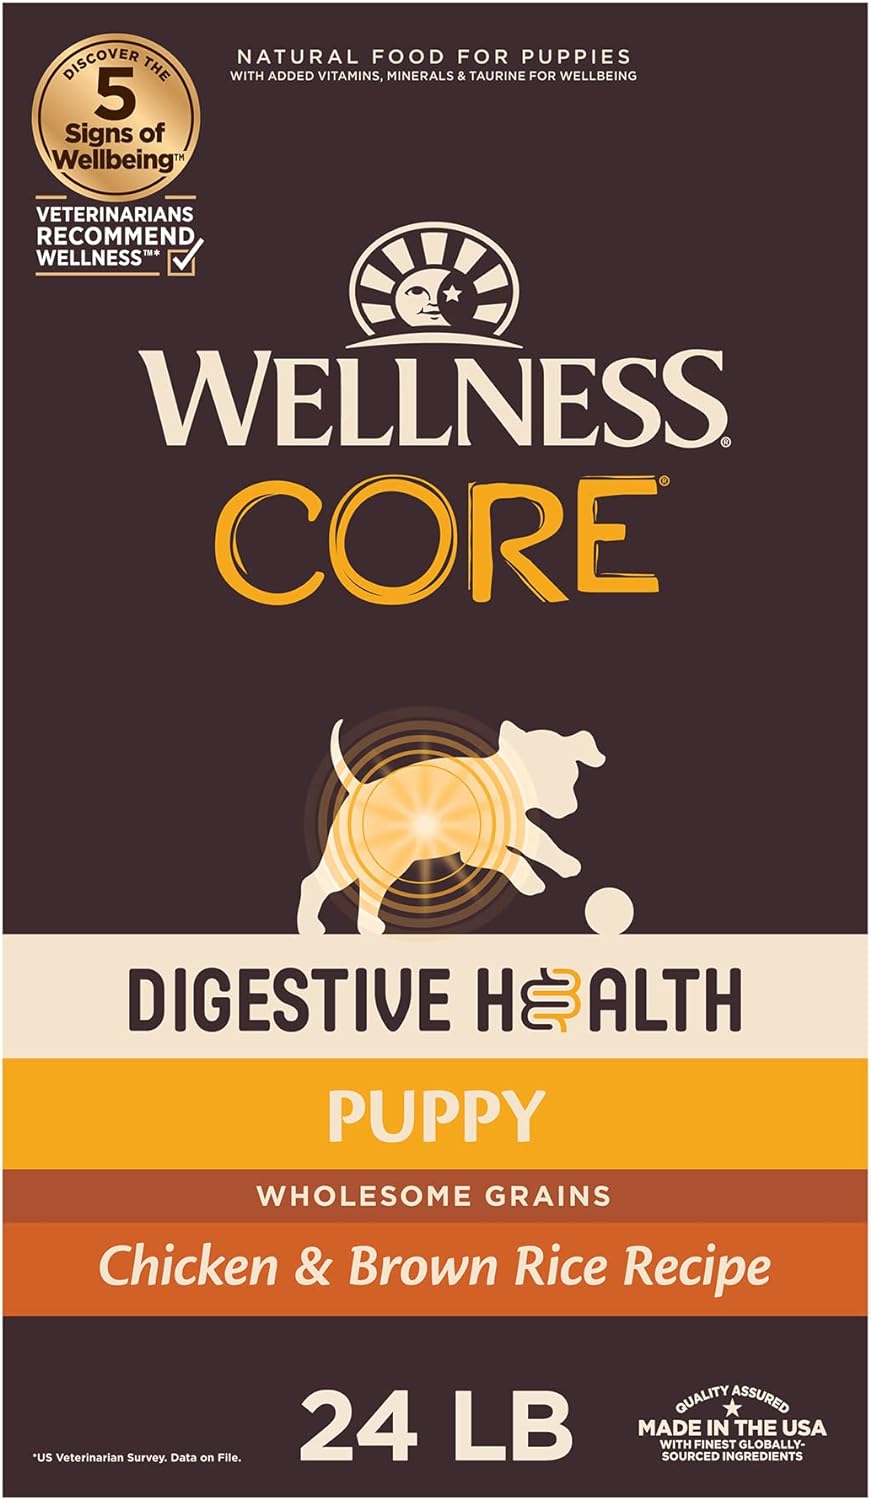 wellness CORE digestive health puppy recipe